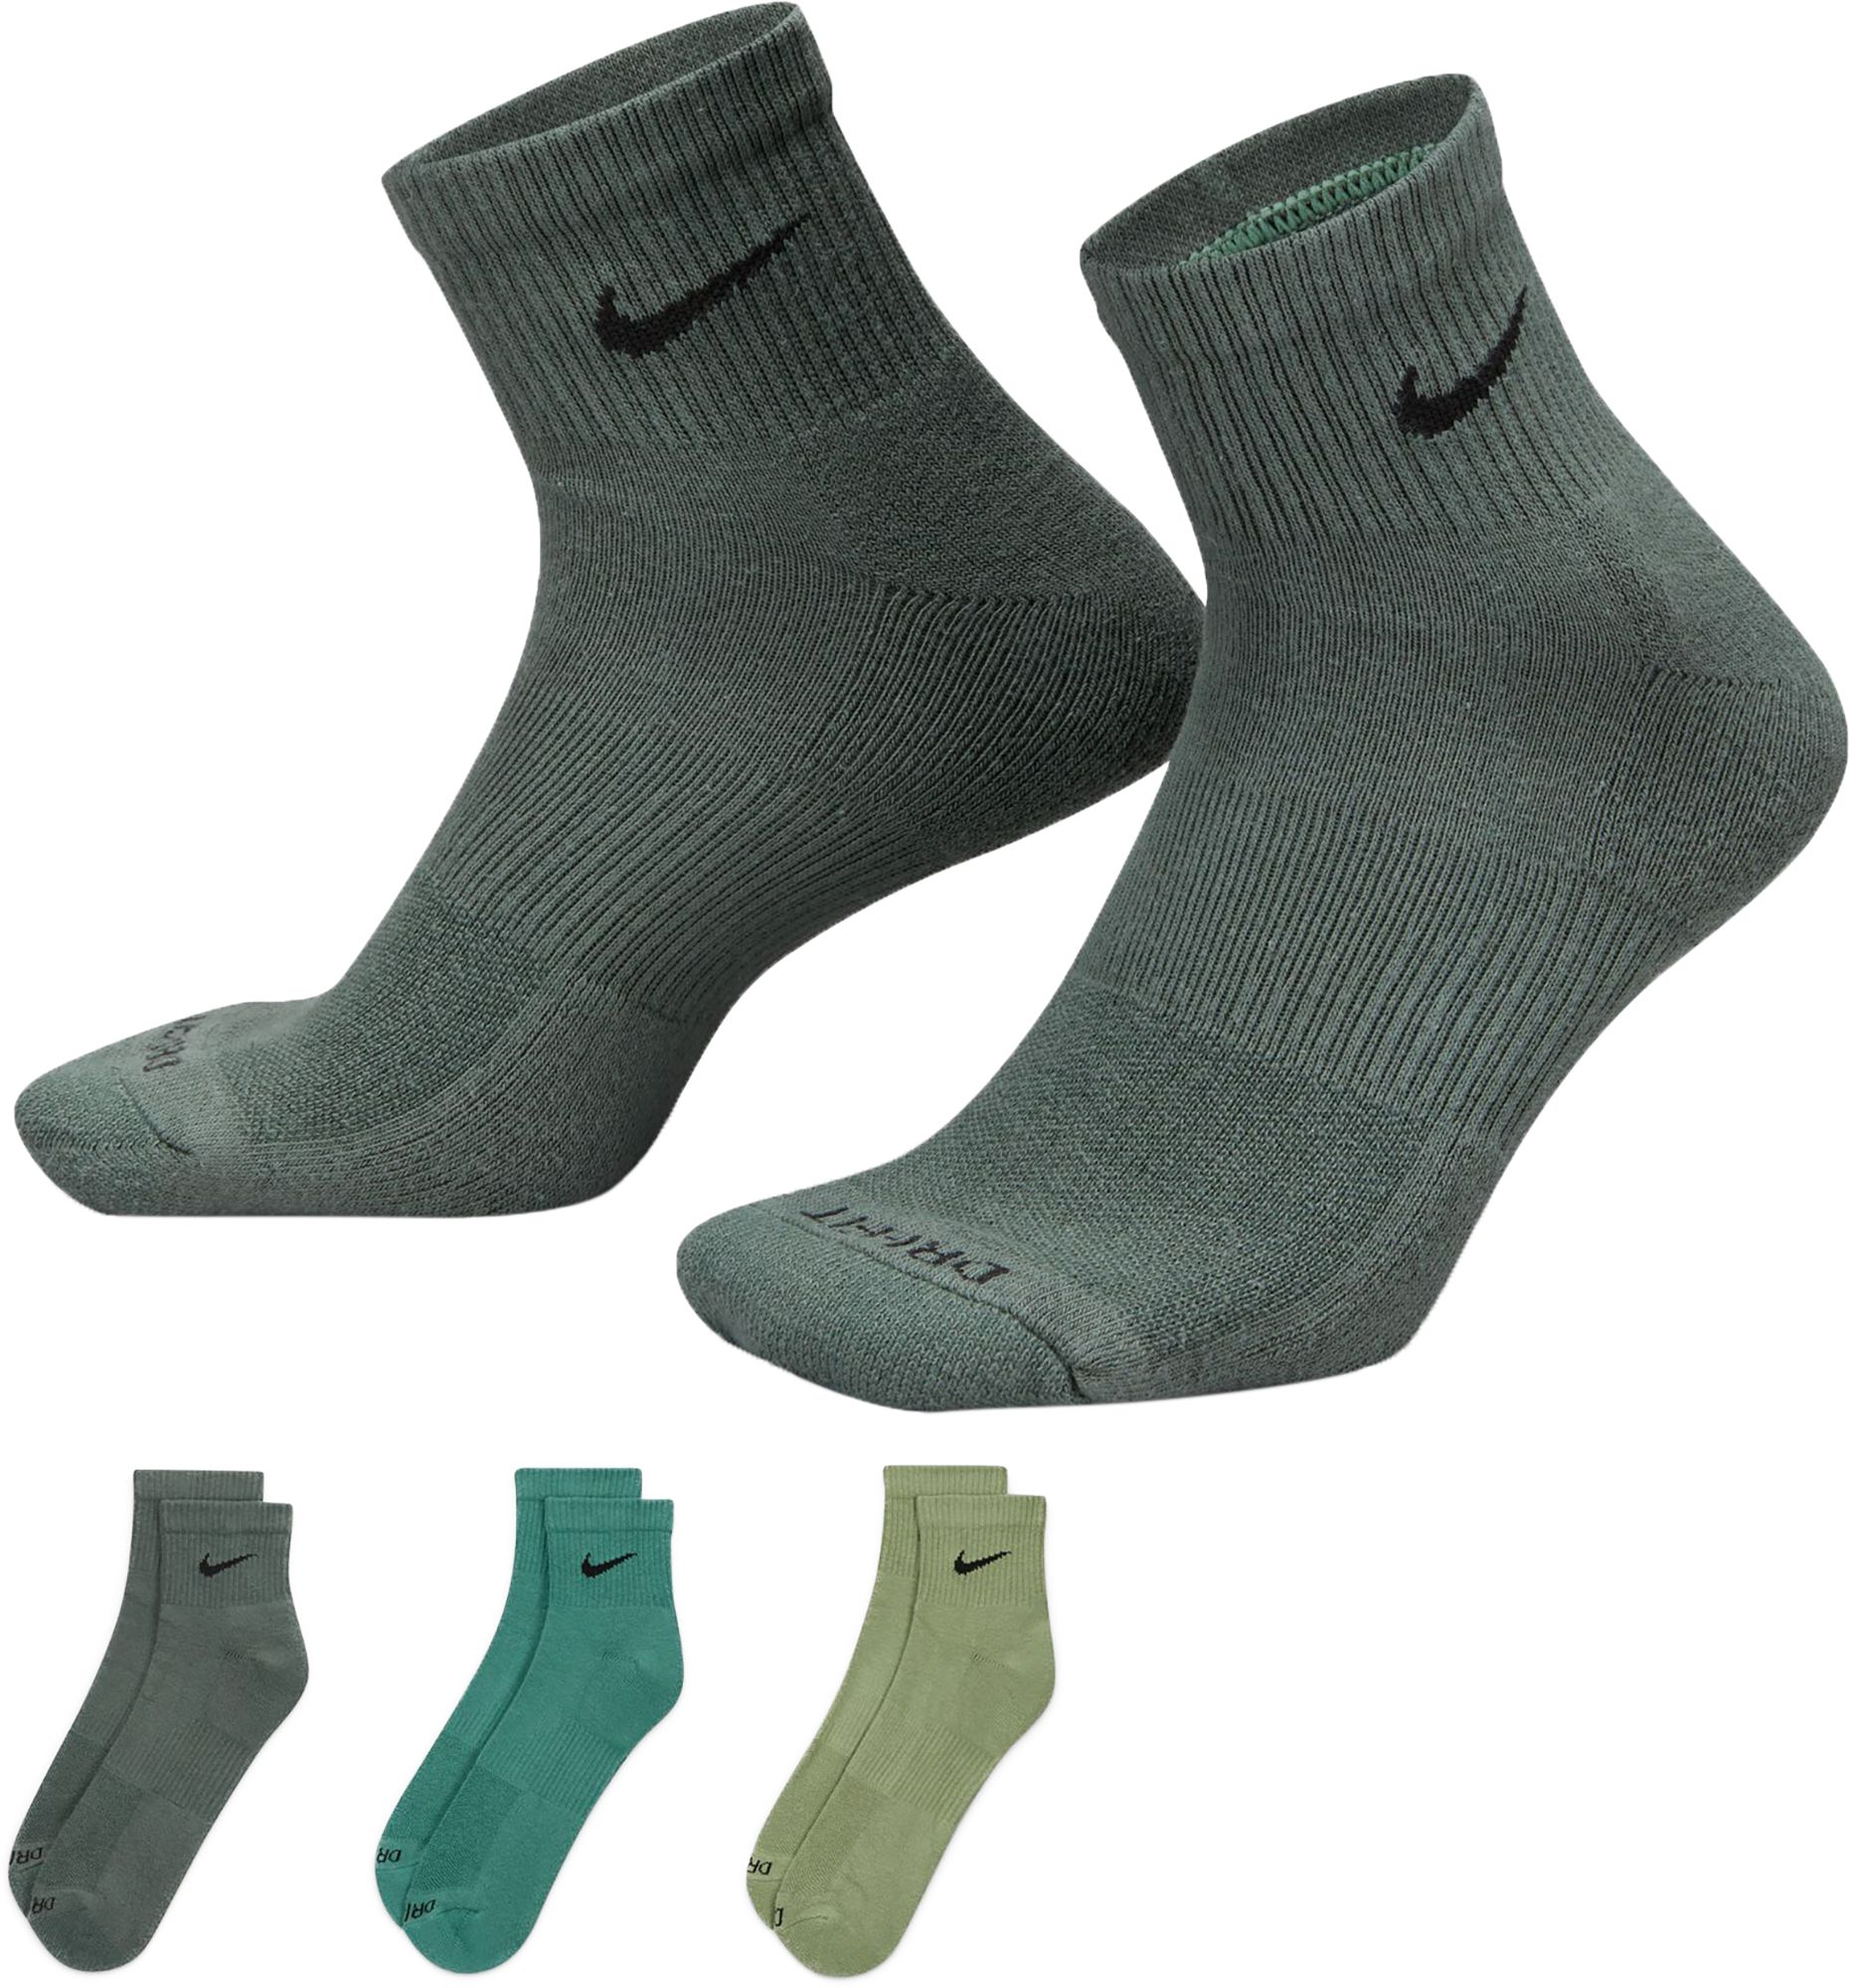 Nike Everyday Plus Cushion Ankle Training Socks - 3 Pack